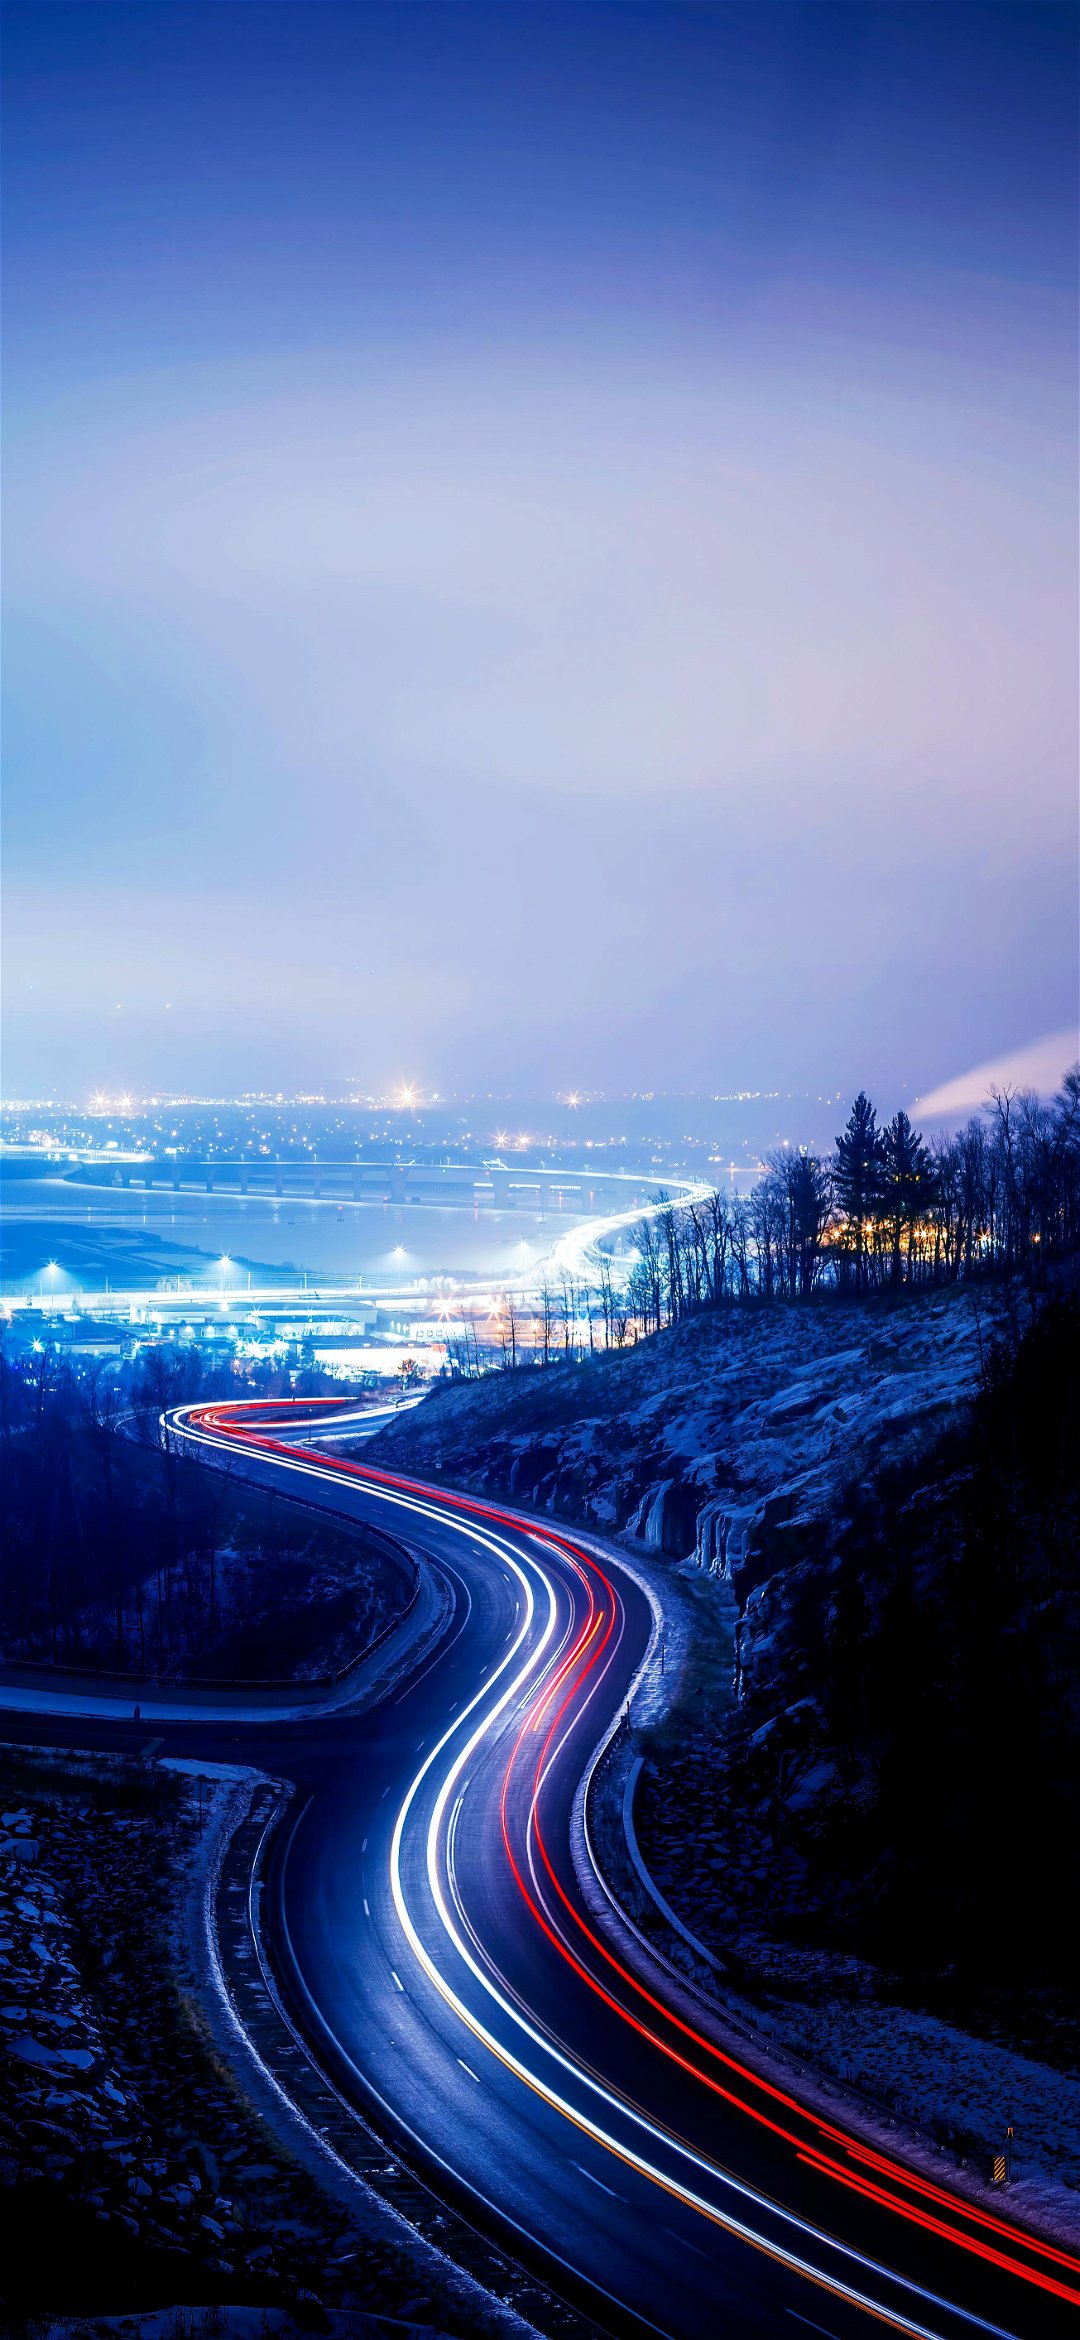 خلفية خطوط ضوء مصابيح السيارات على طريق المدينة الأزرق